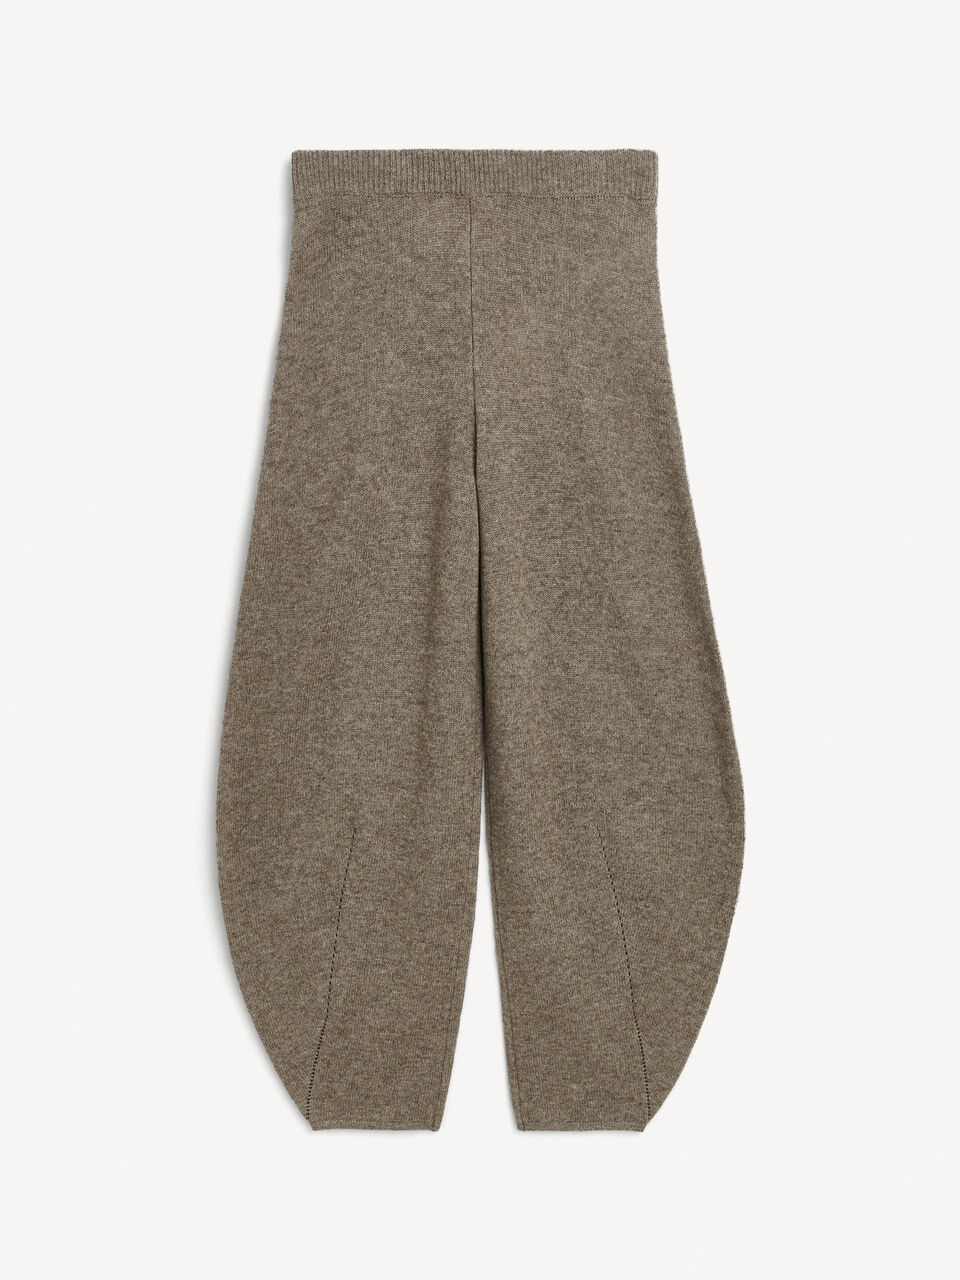 Tevah wool trousers - Buy Winter sale online